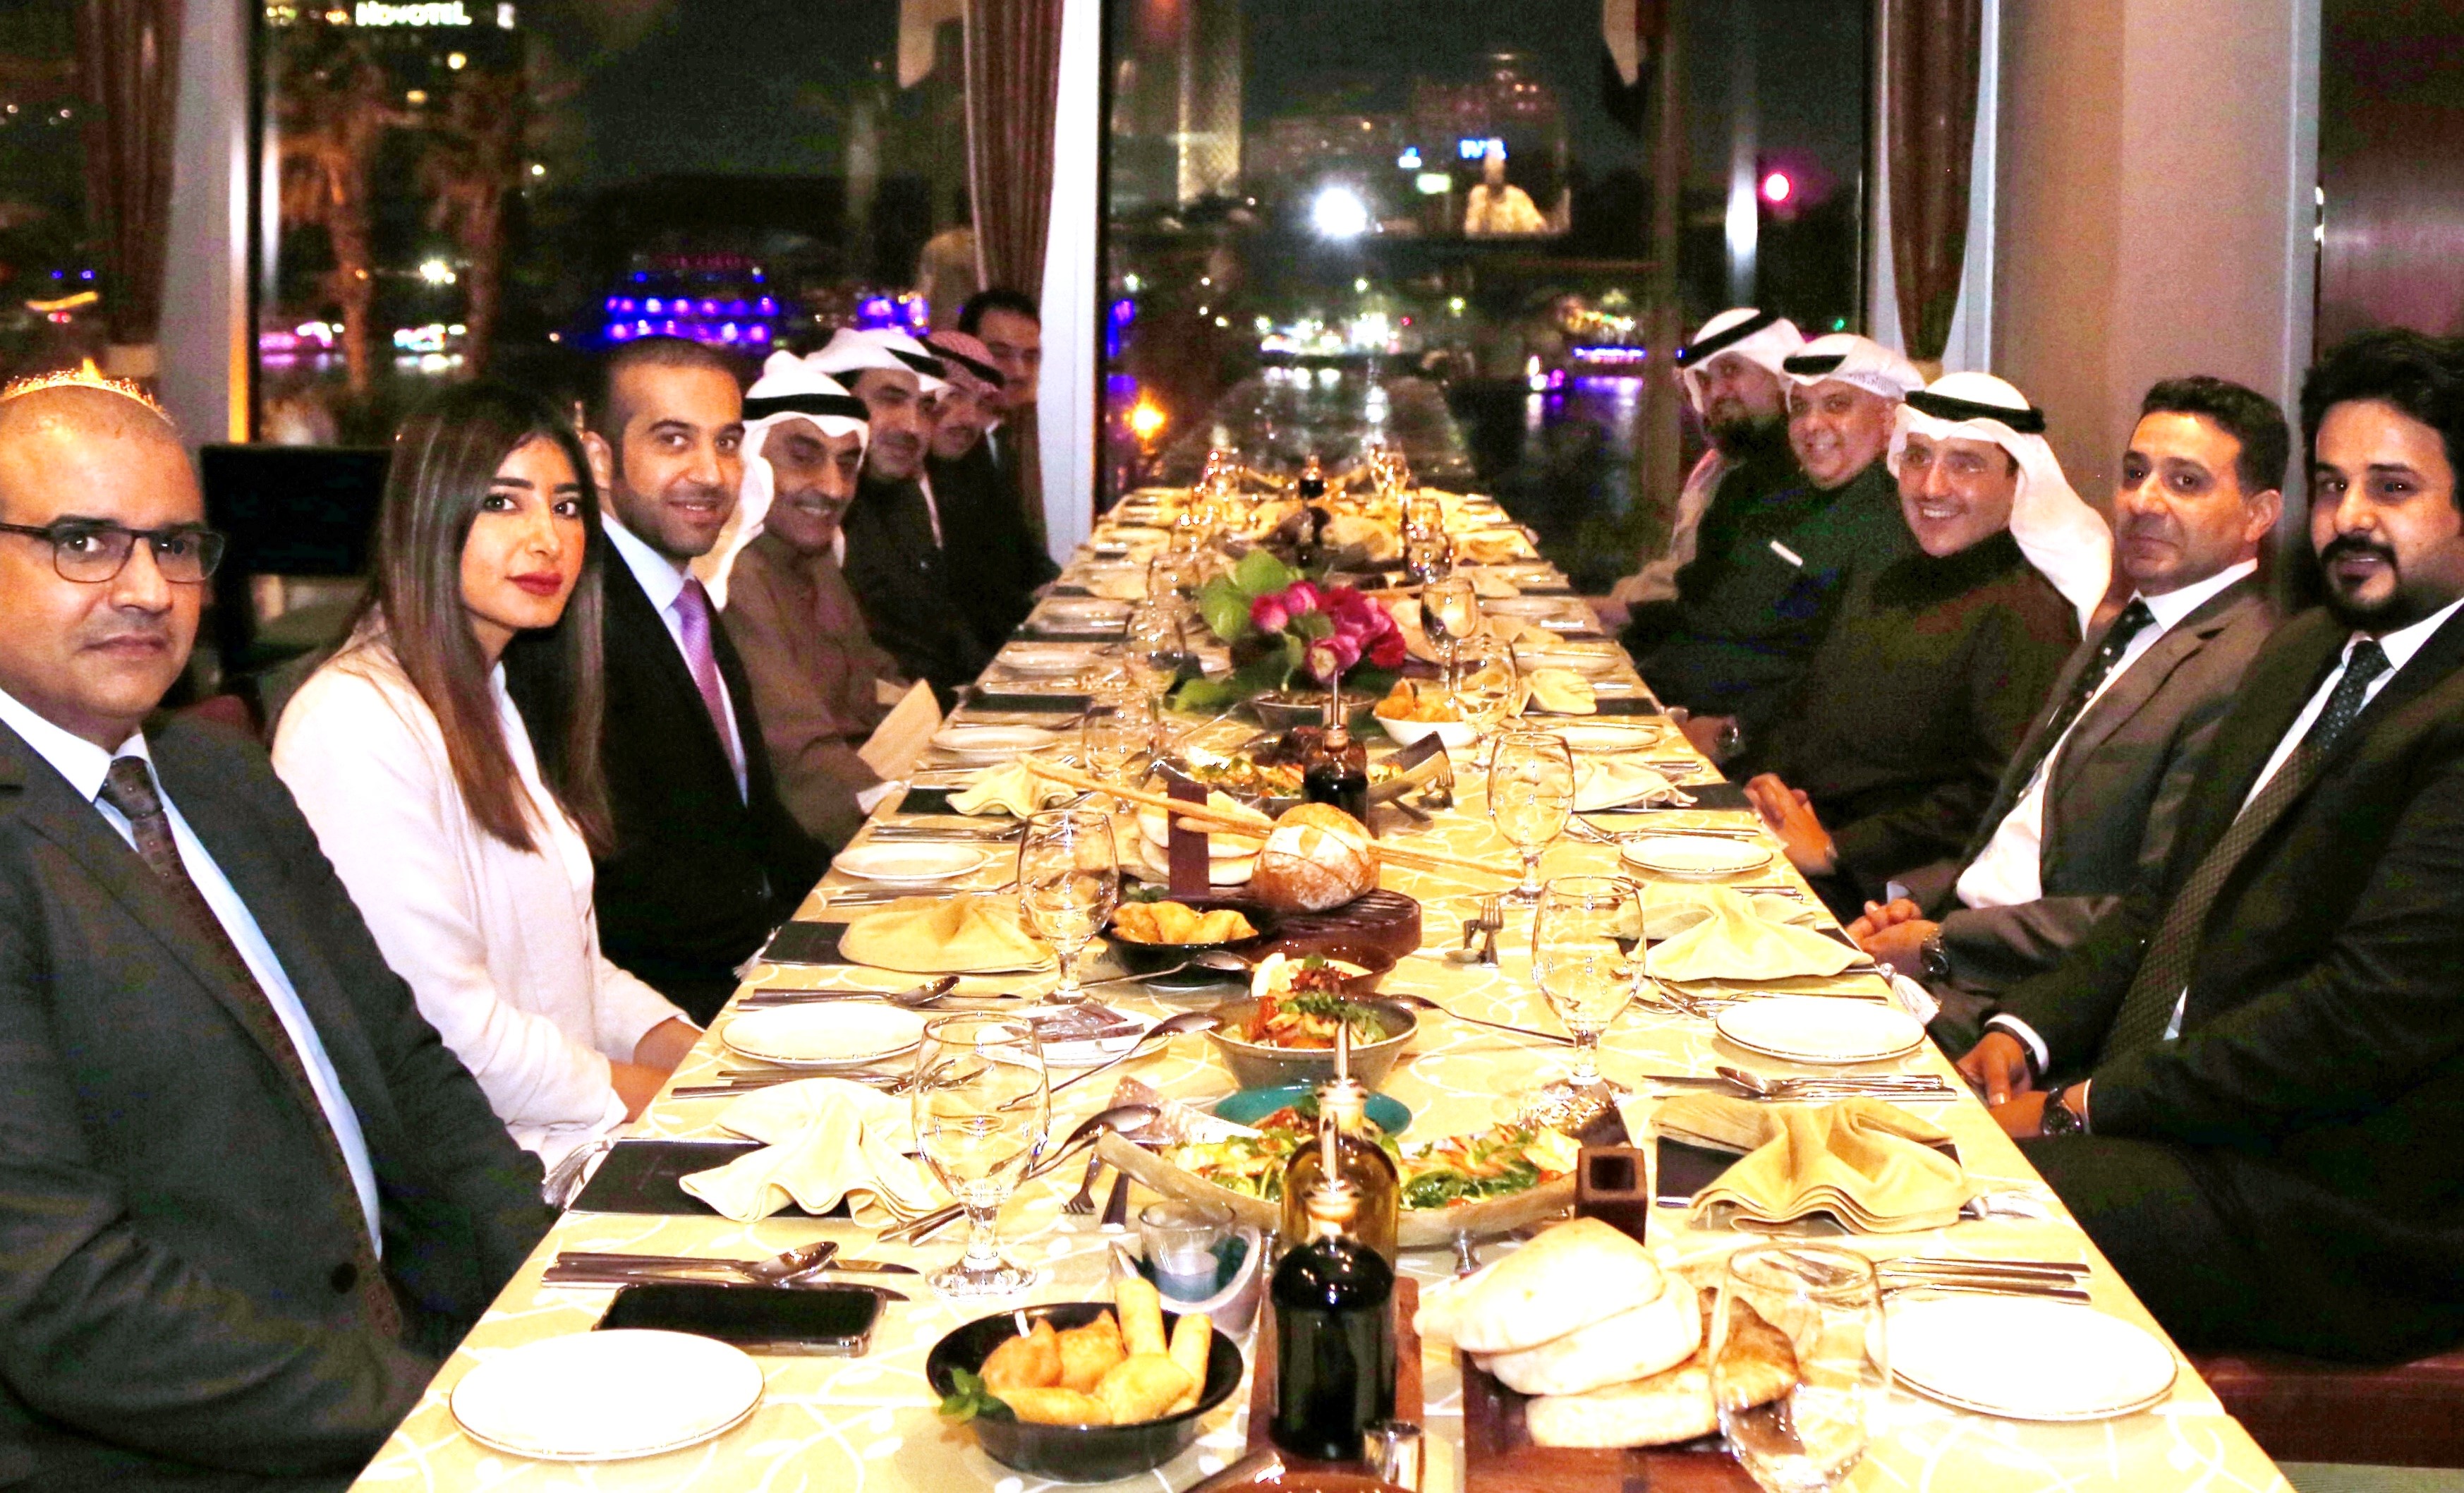 Kuwait Foreign Minister attends dinner banquet